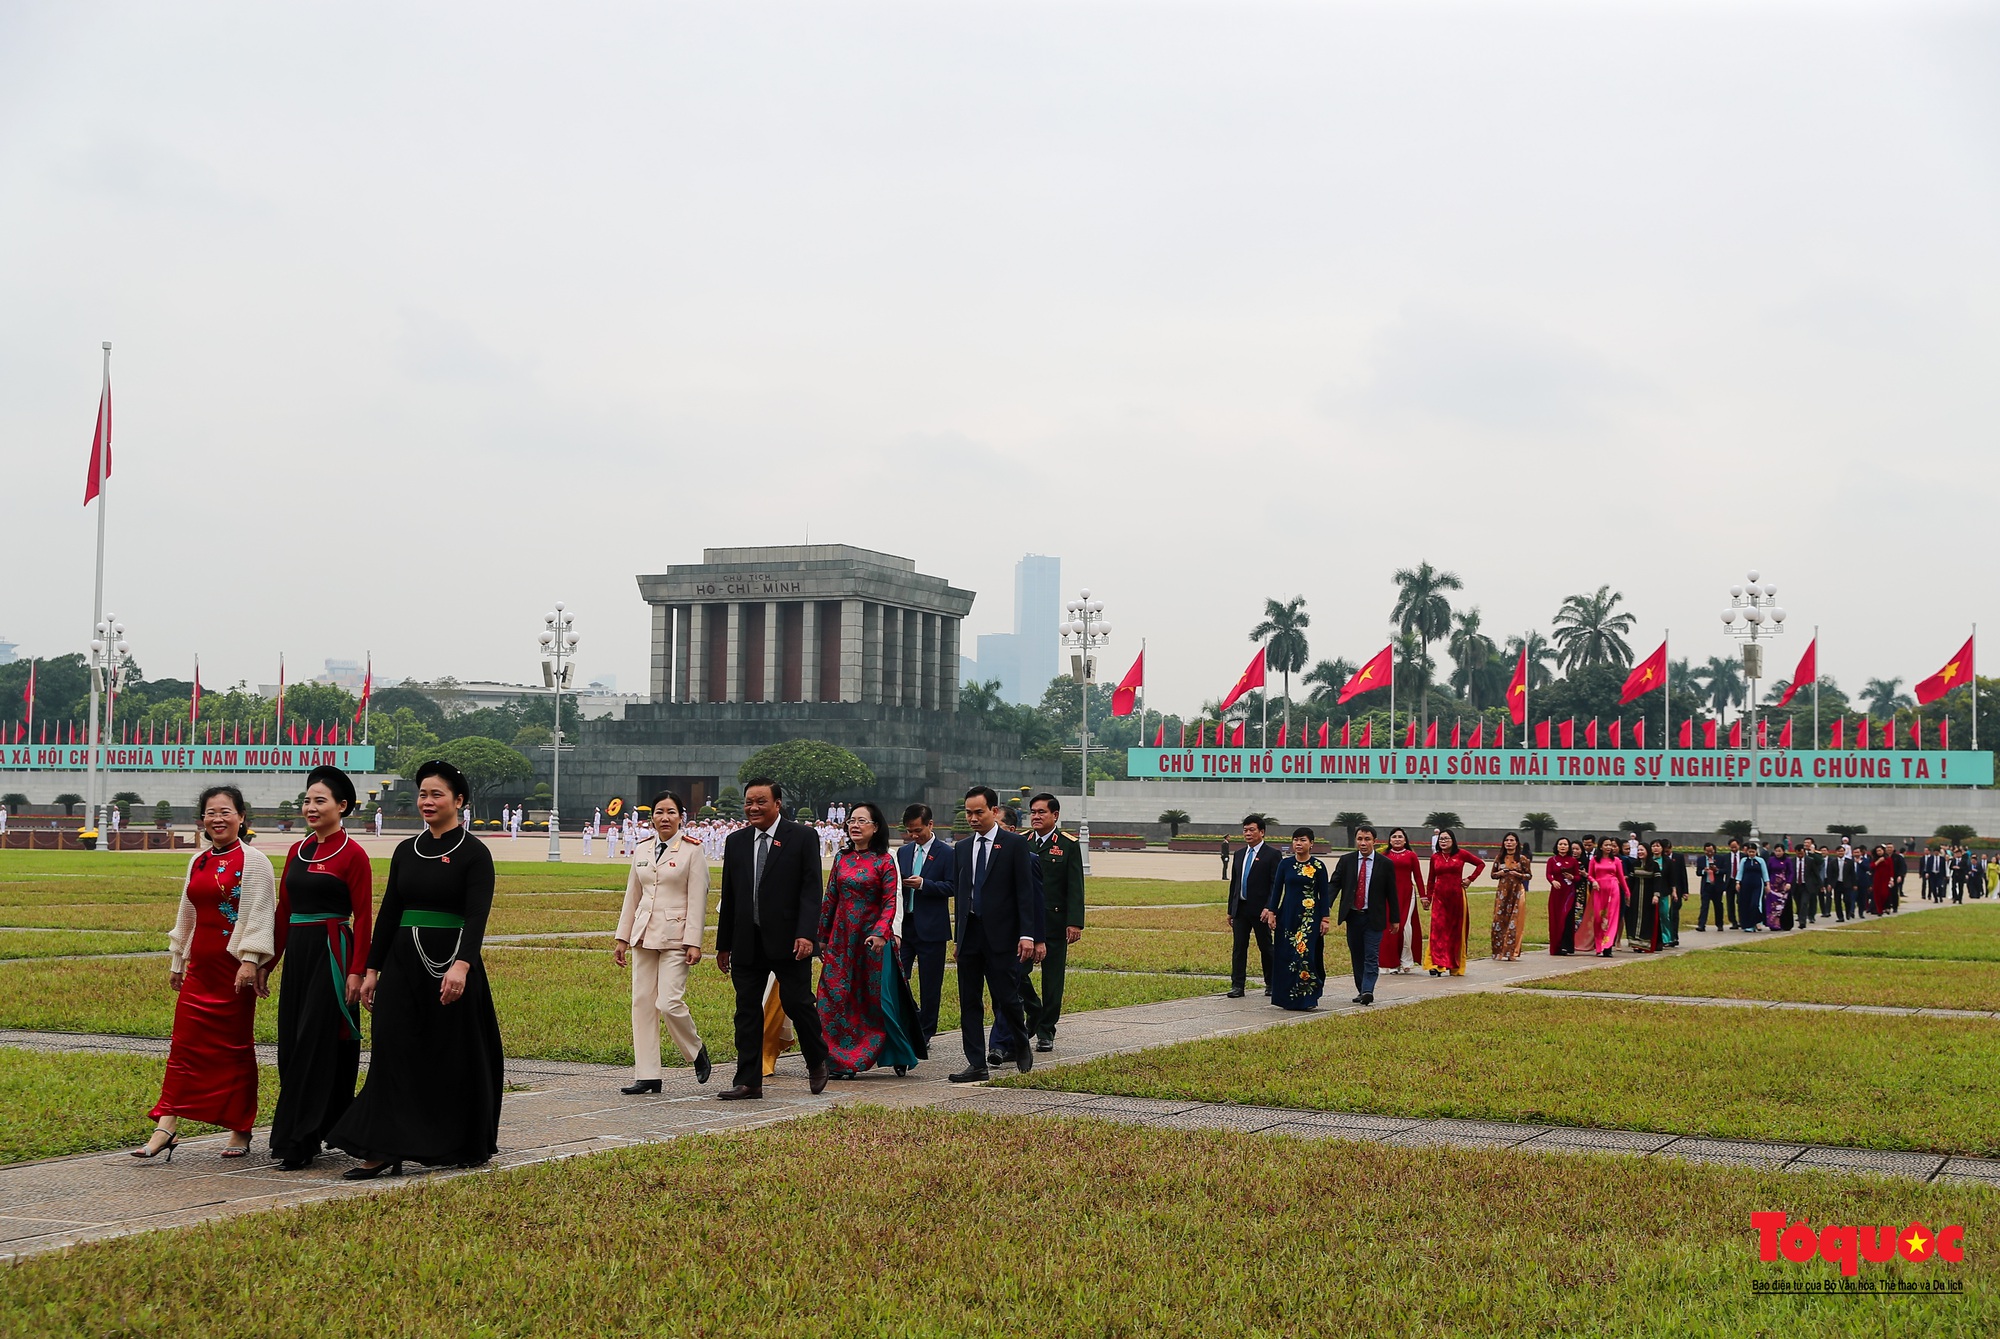 Lãnh đạo Đảng, Nhà nước và đại biểu Quốc hội viếng Chủ tịch Hồ Chí Minh trước khai mạc Kỳ 6 Quốc hội khóa XV - Ảnh 9.